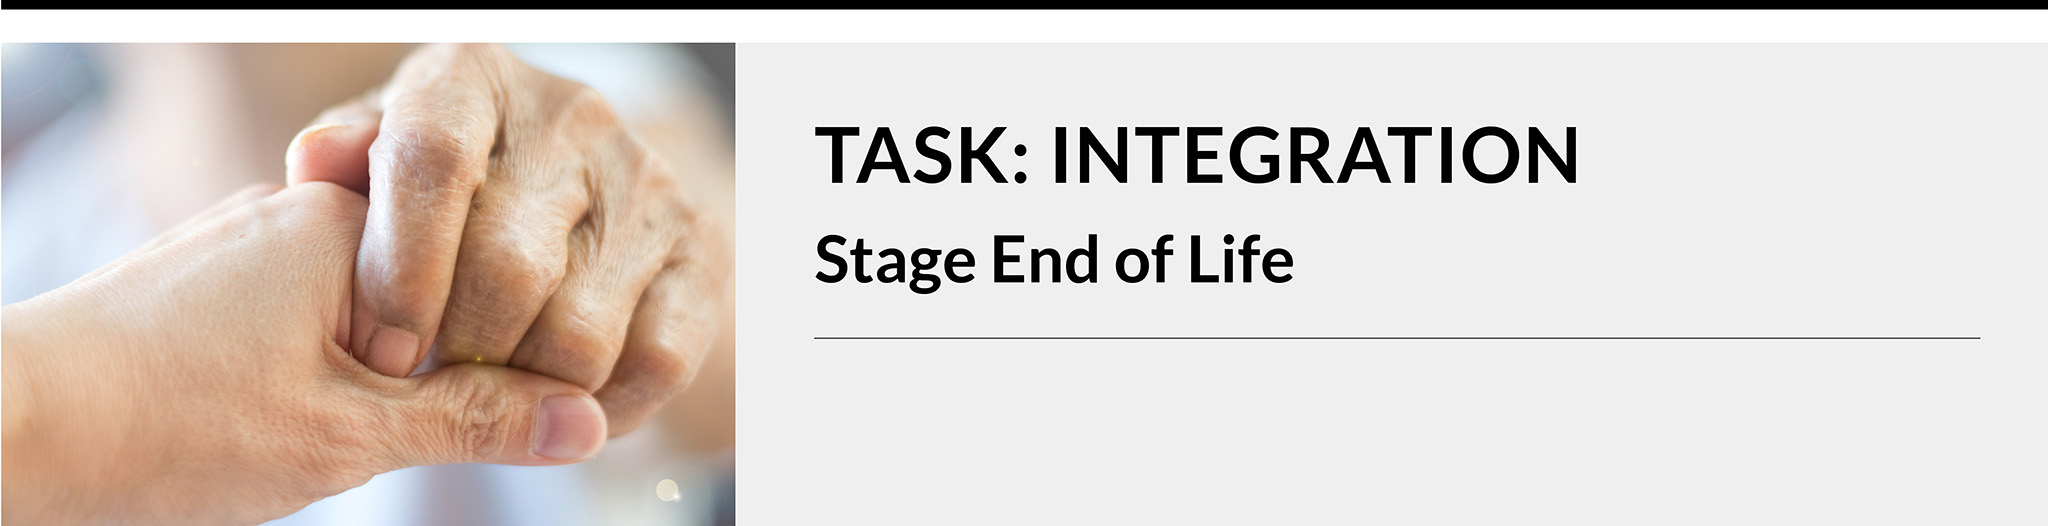 Task: Integration. Stage: End of life.